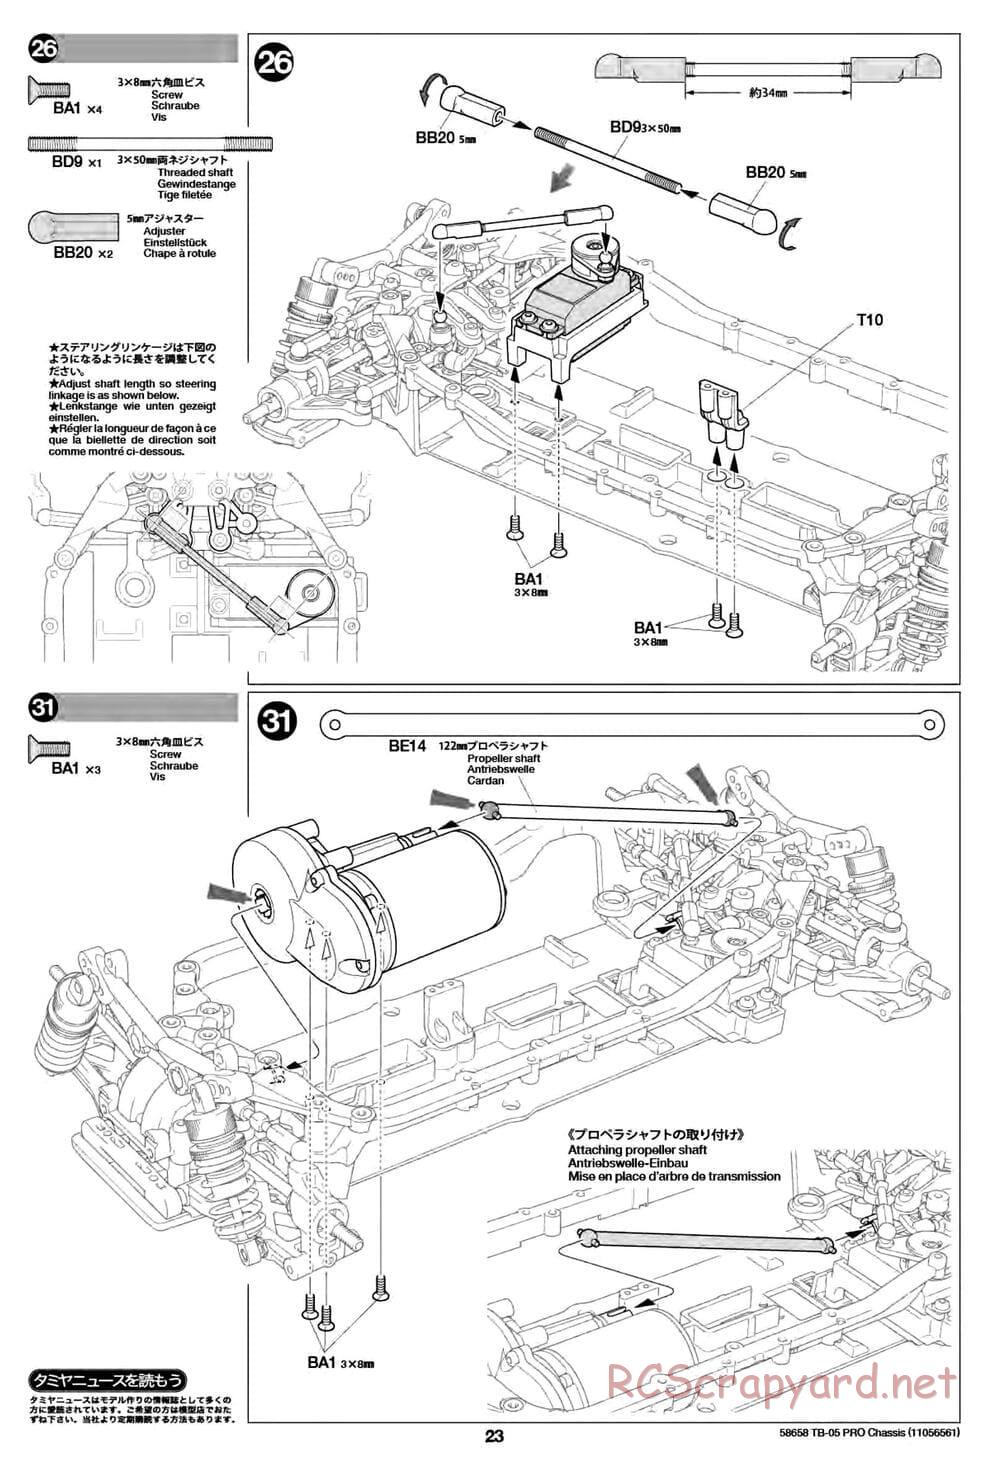 Tamiya - TB-05 Pro Chassis - Manual - Page 23